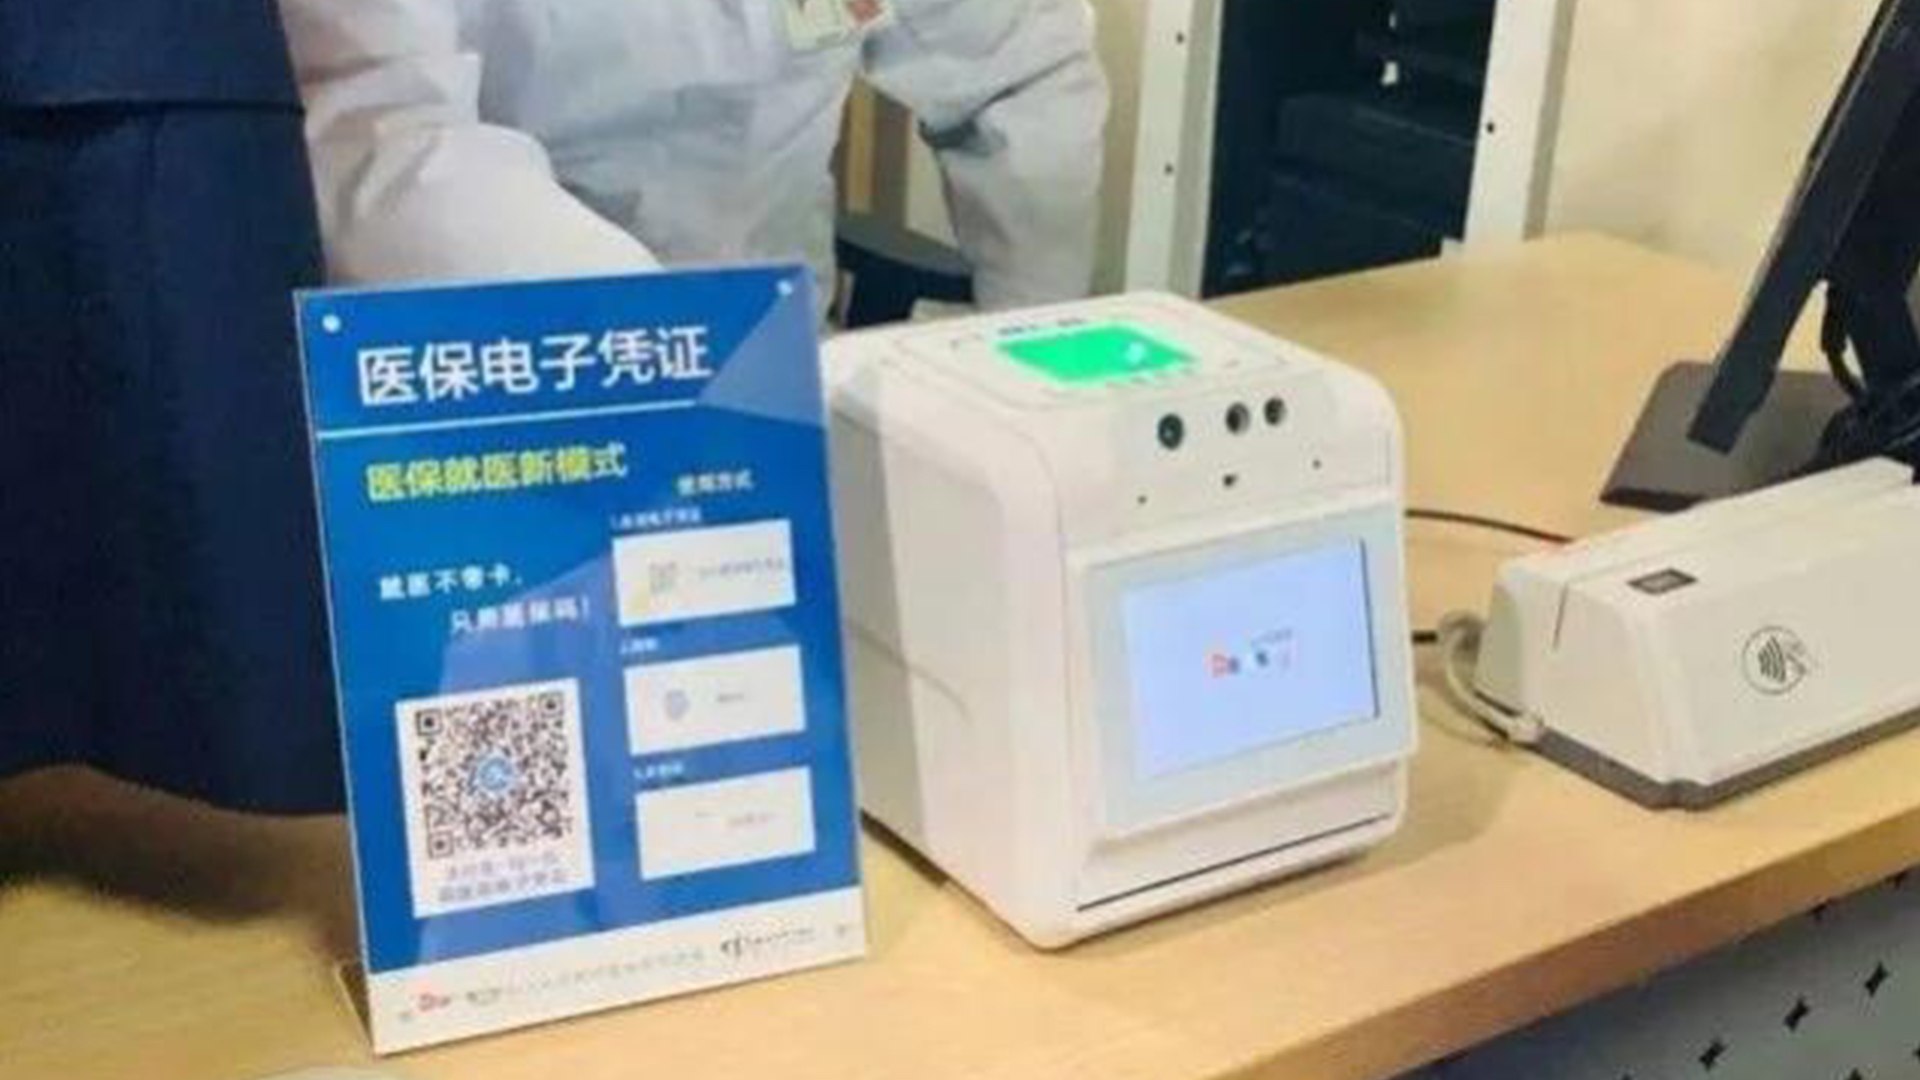 MS-PSD80智能盒子亮相北京助力医保事业